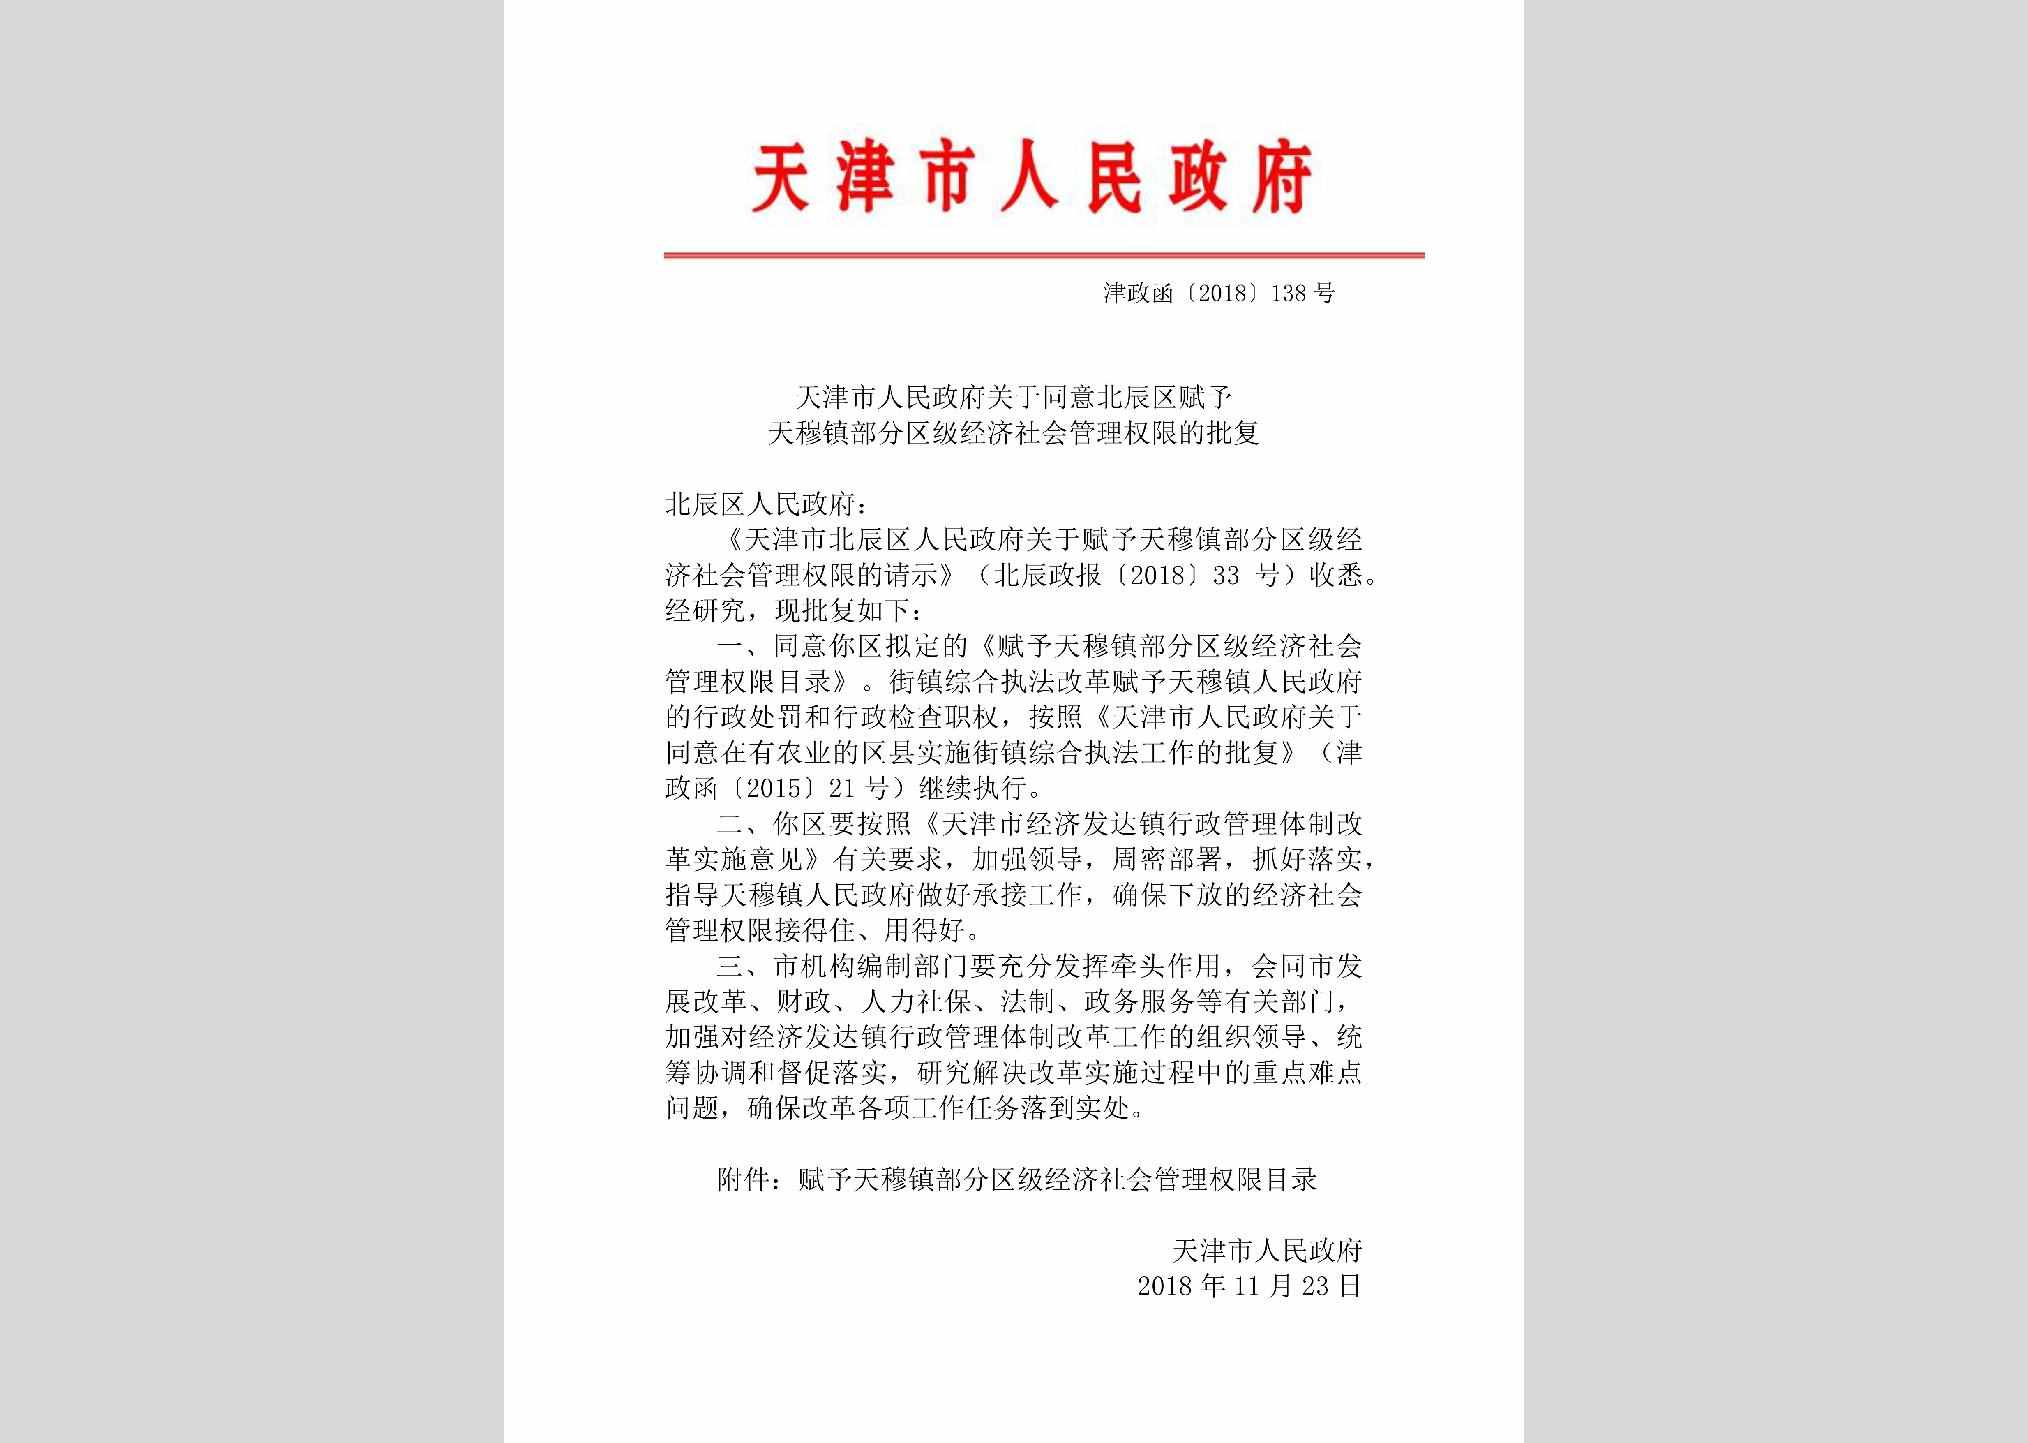 津政函[2018]138号：天津市人民政府关于同意北辰区赋予天穆镇部分区级经济社会管理权限的批复